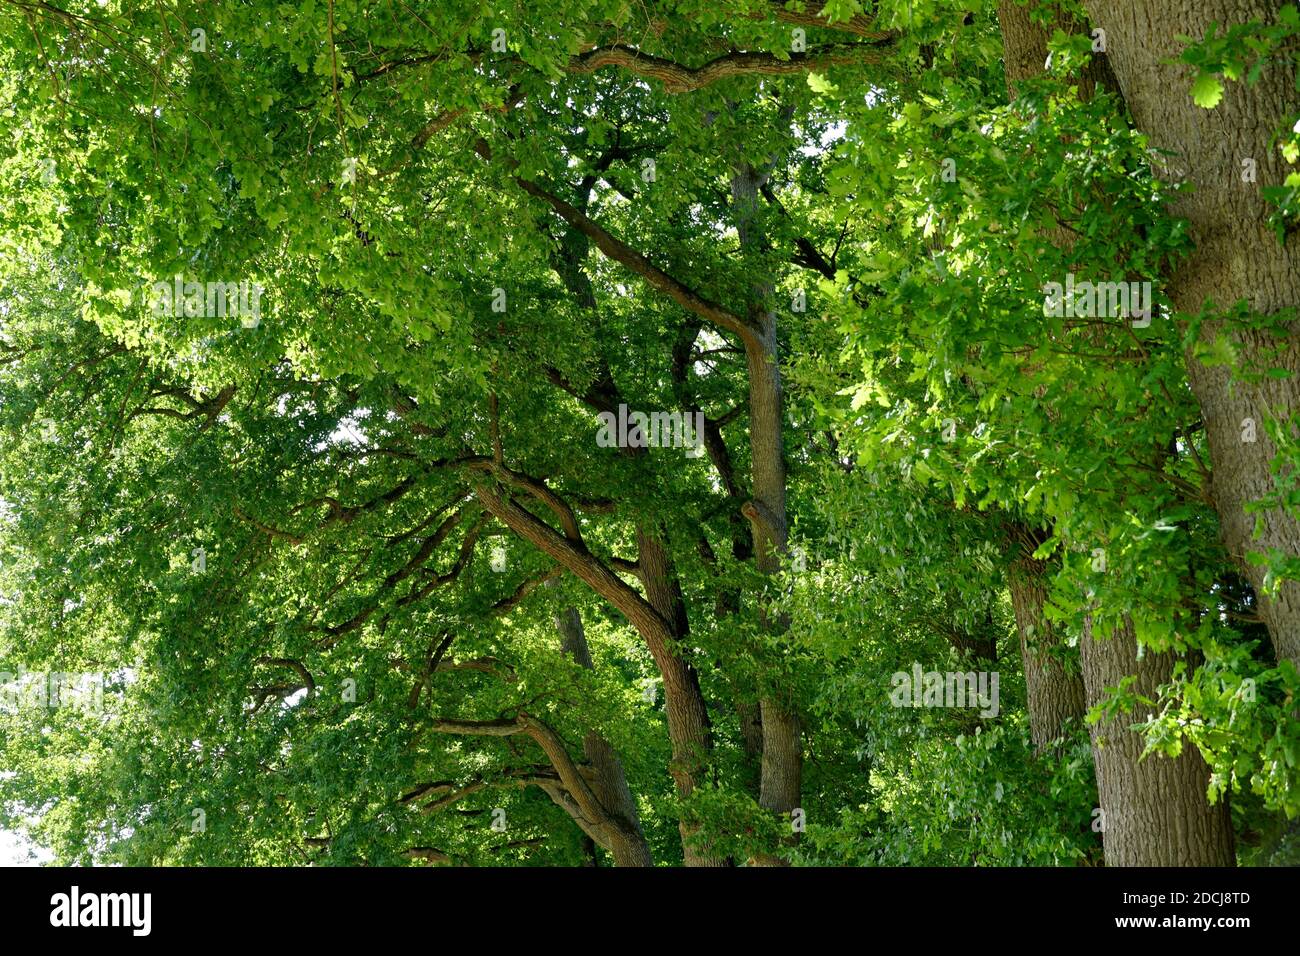 Laubbäume wachsen in einer Reihe und ihre Zweige mit frischen grünen Blättern bedeckt. Die Äste sind gebogen und bilden einen Bogen. Geeignet als saisonal. Stockfoto